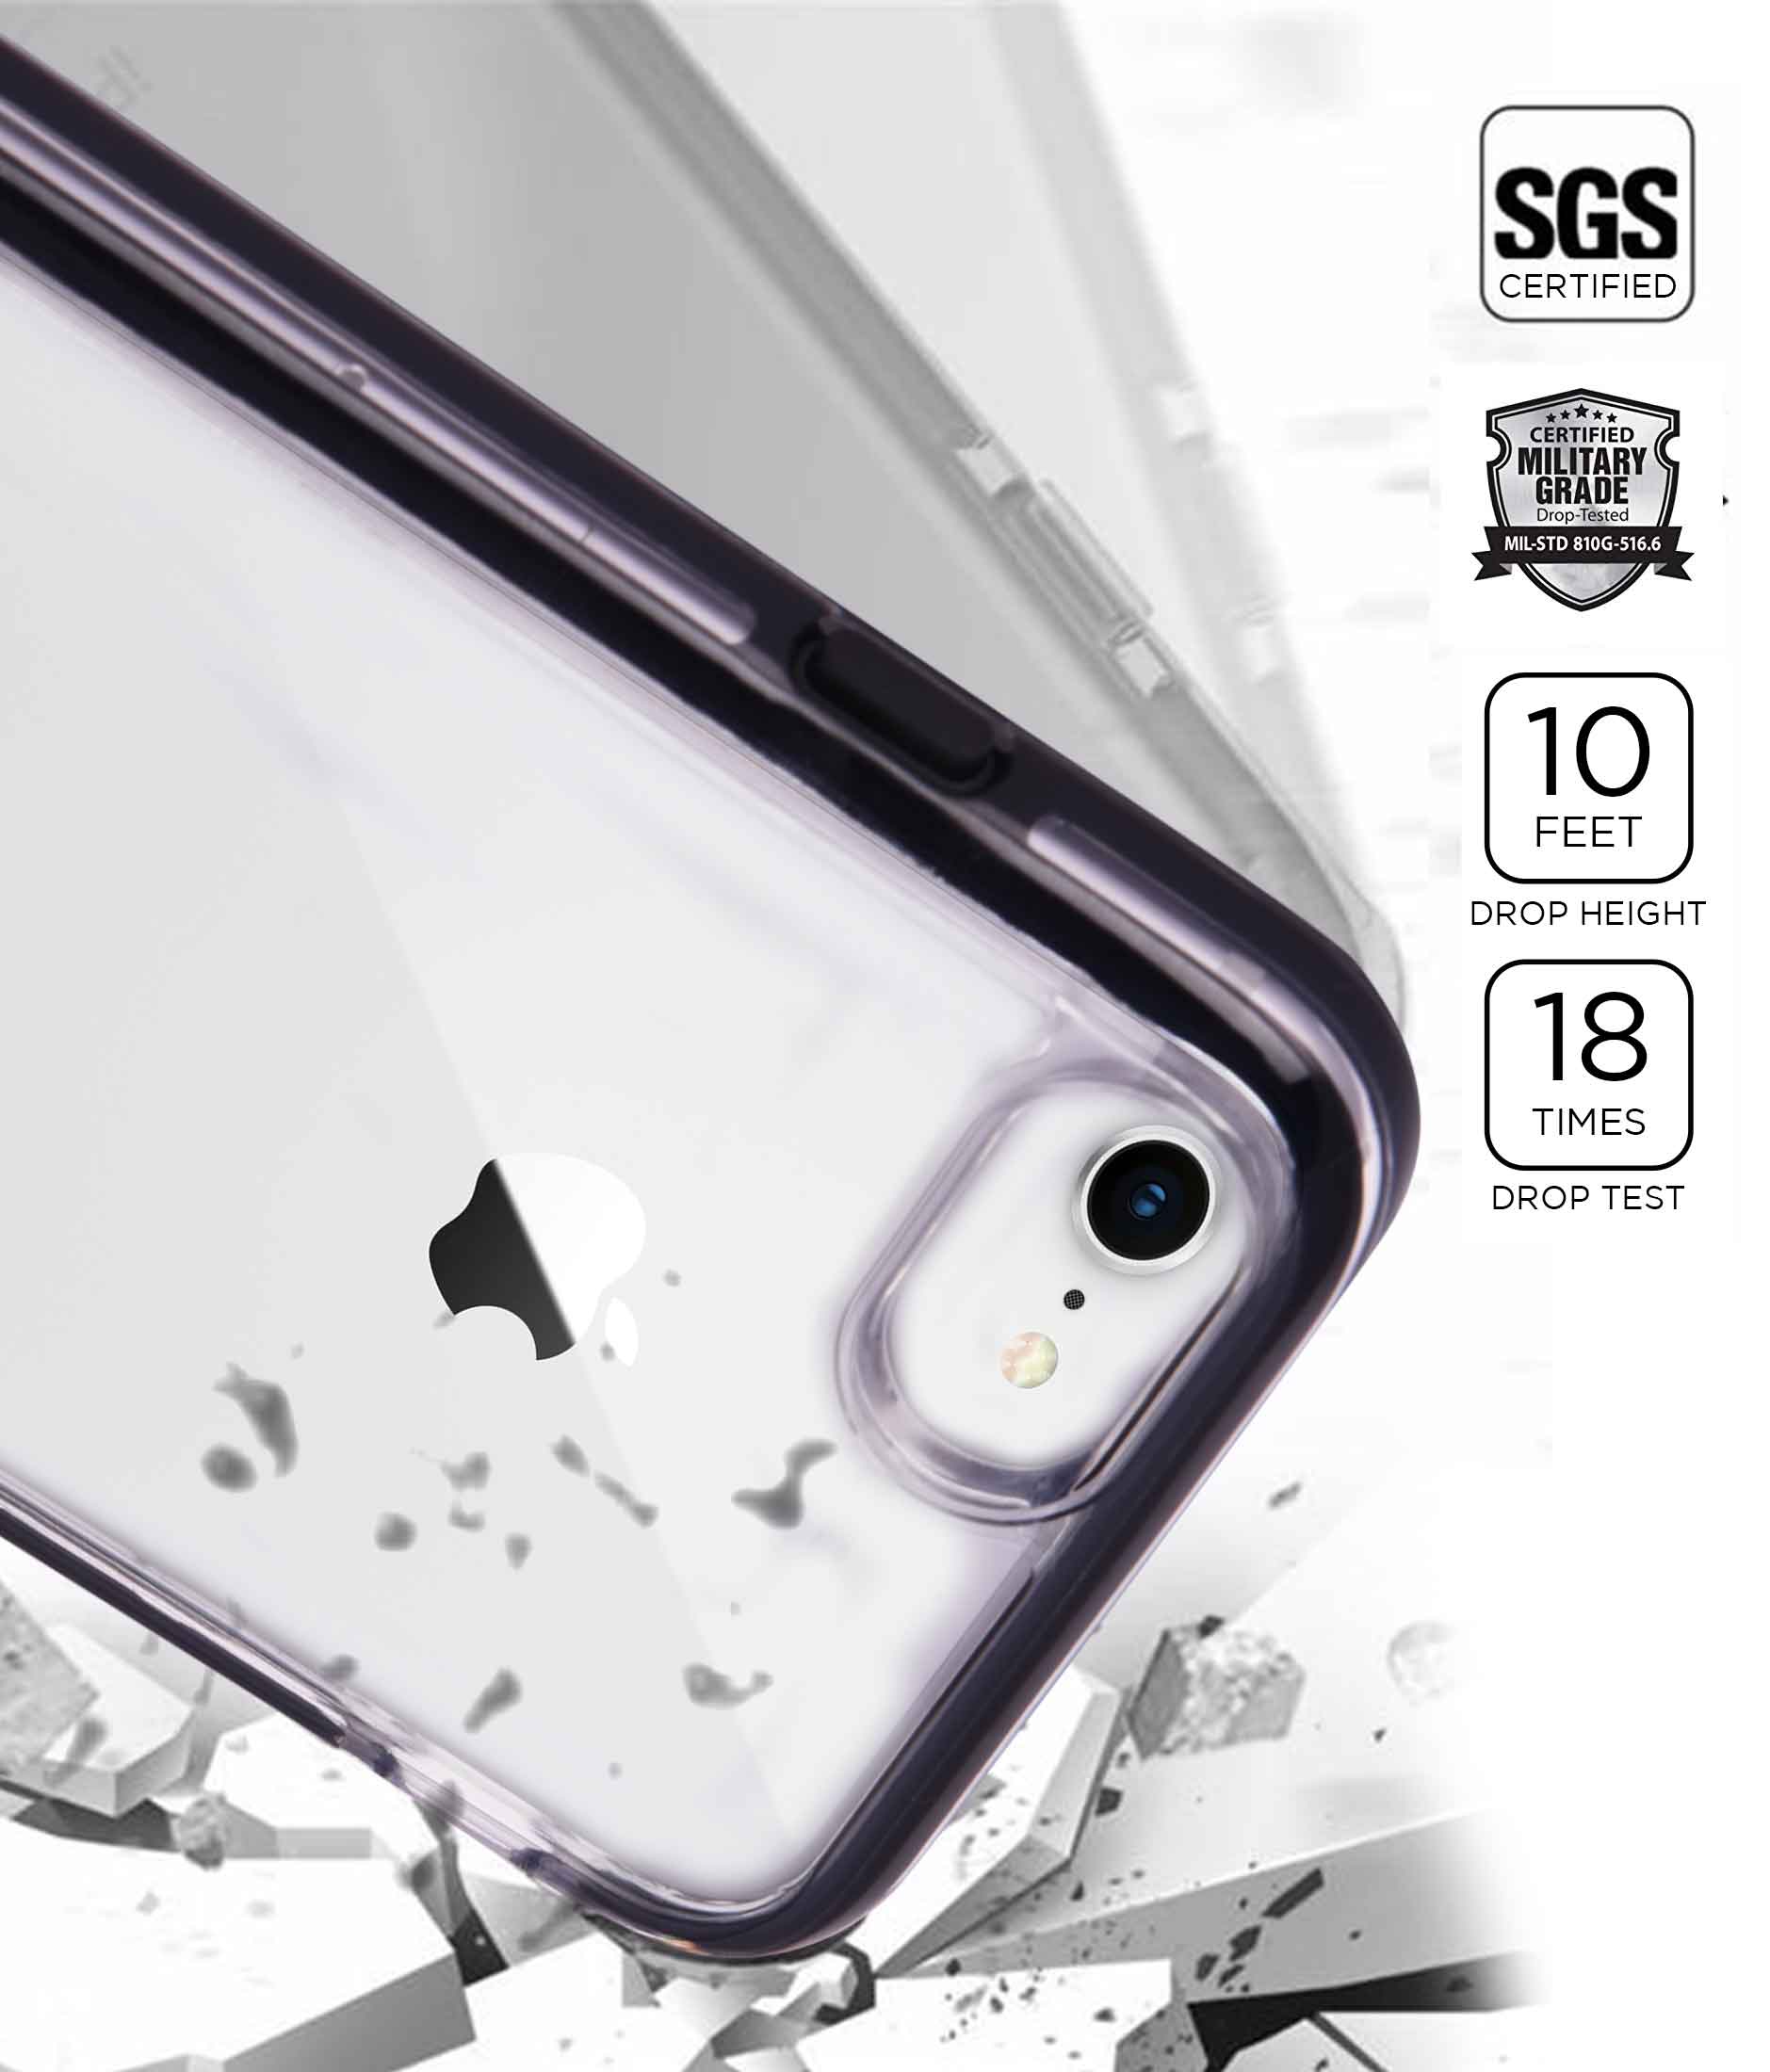 Illuminated Thanos - Extreme Phone Case for iPhone 7